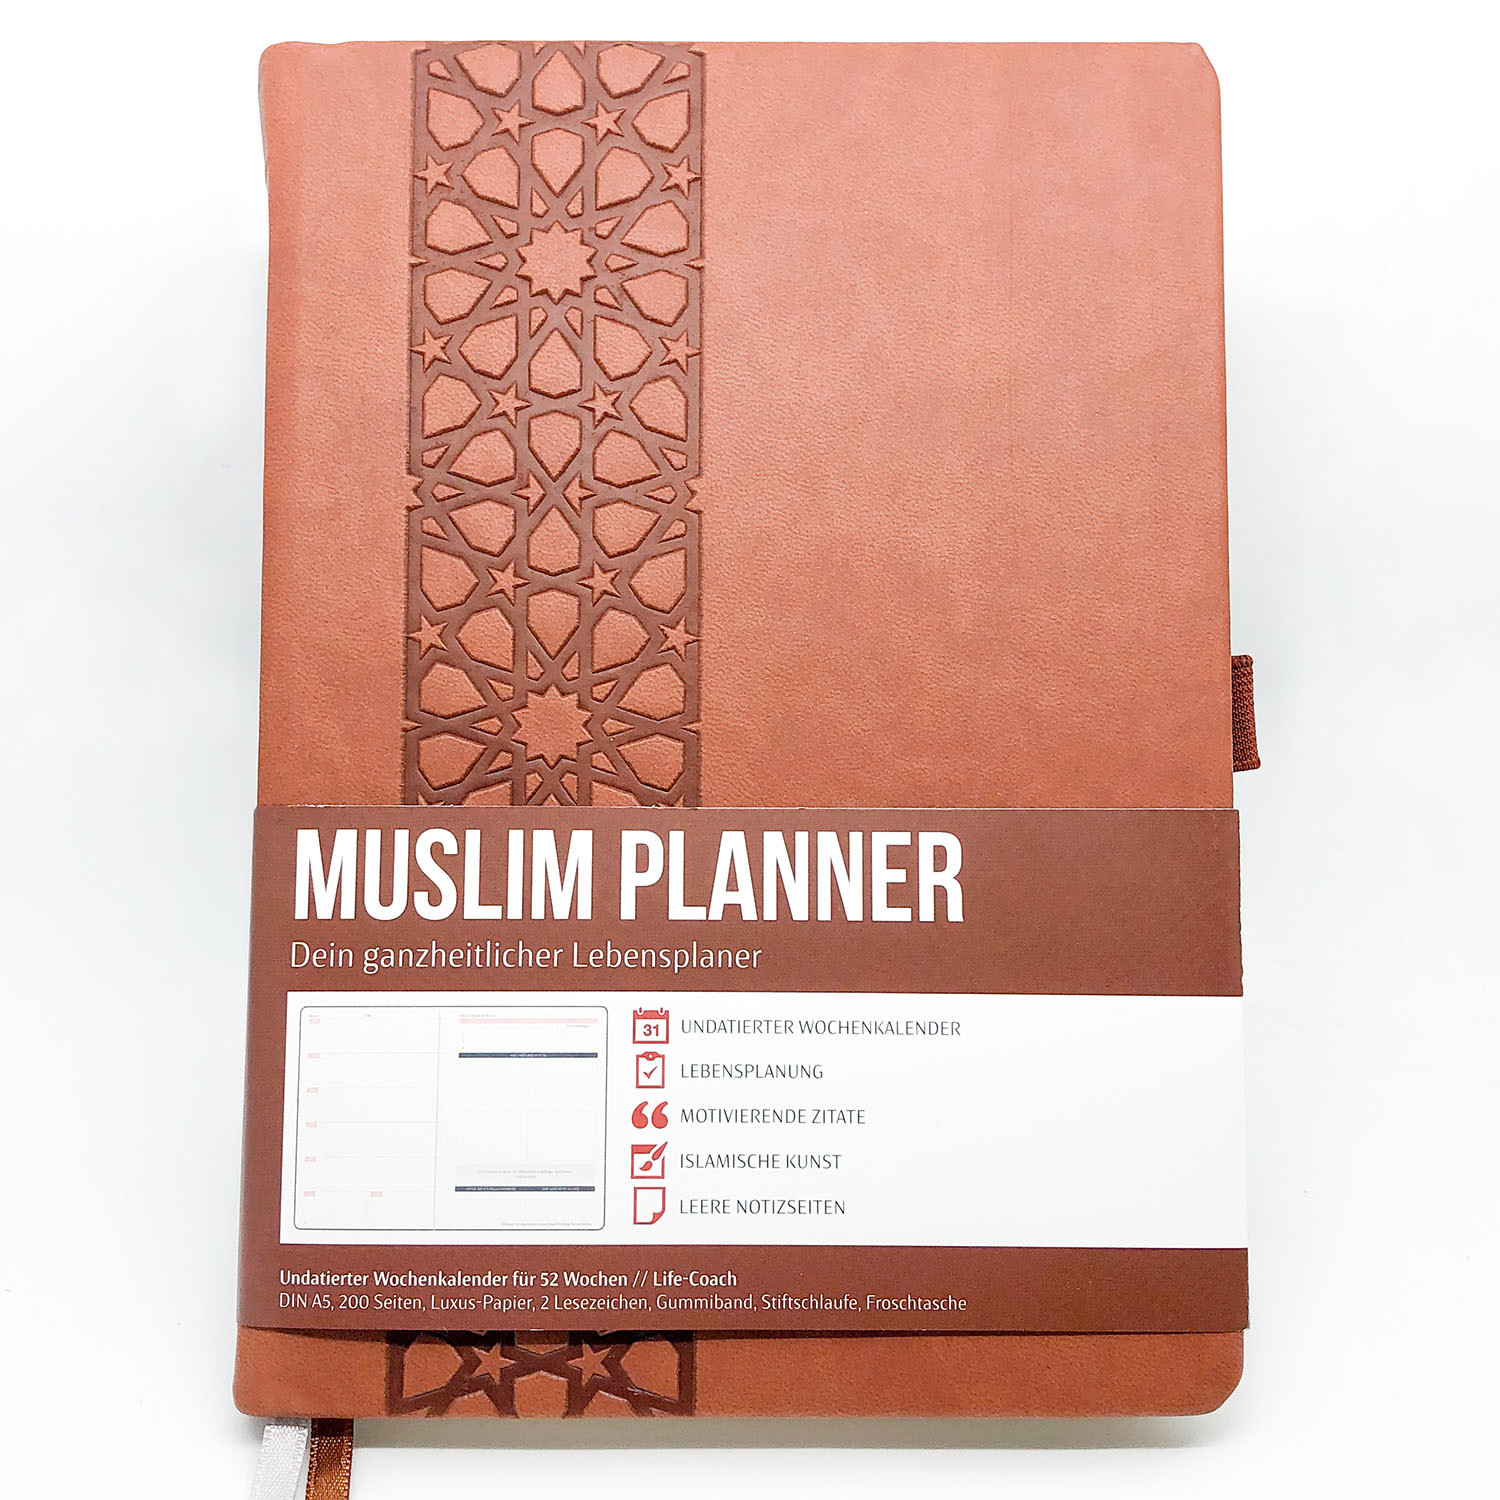 Muslim Planner - argan